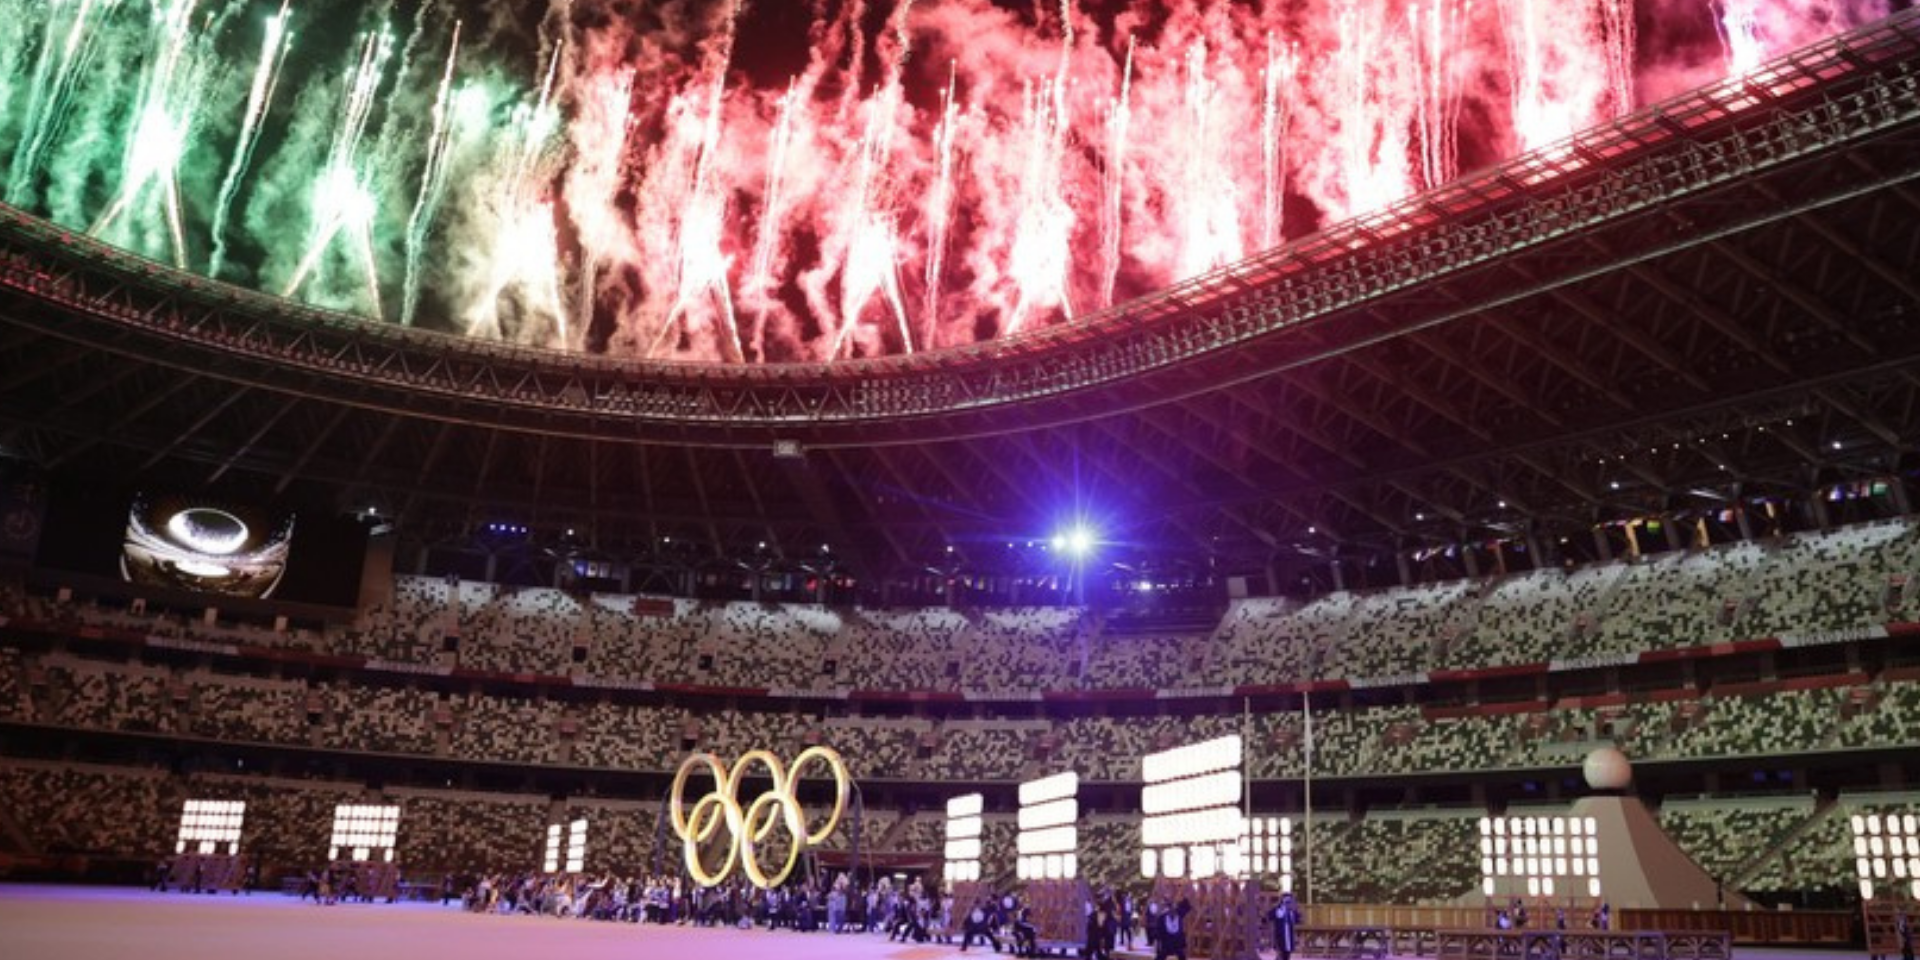 Os Jogos Olímpicos de Tóquio 2020 nas Redes Sociais